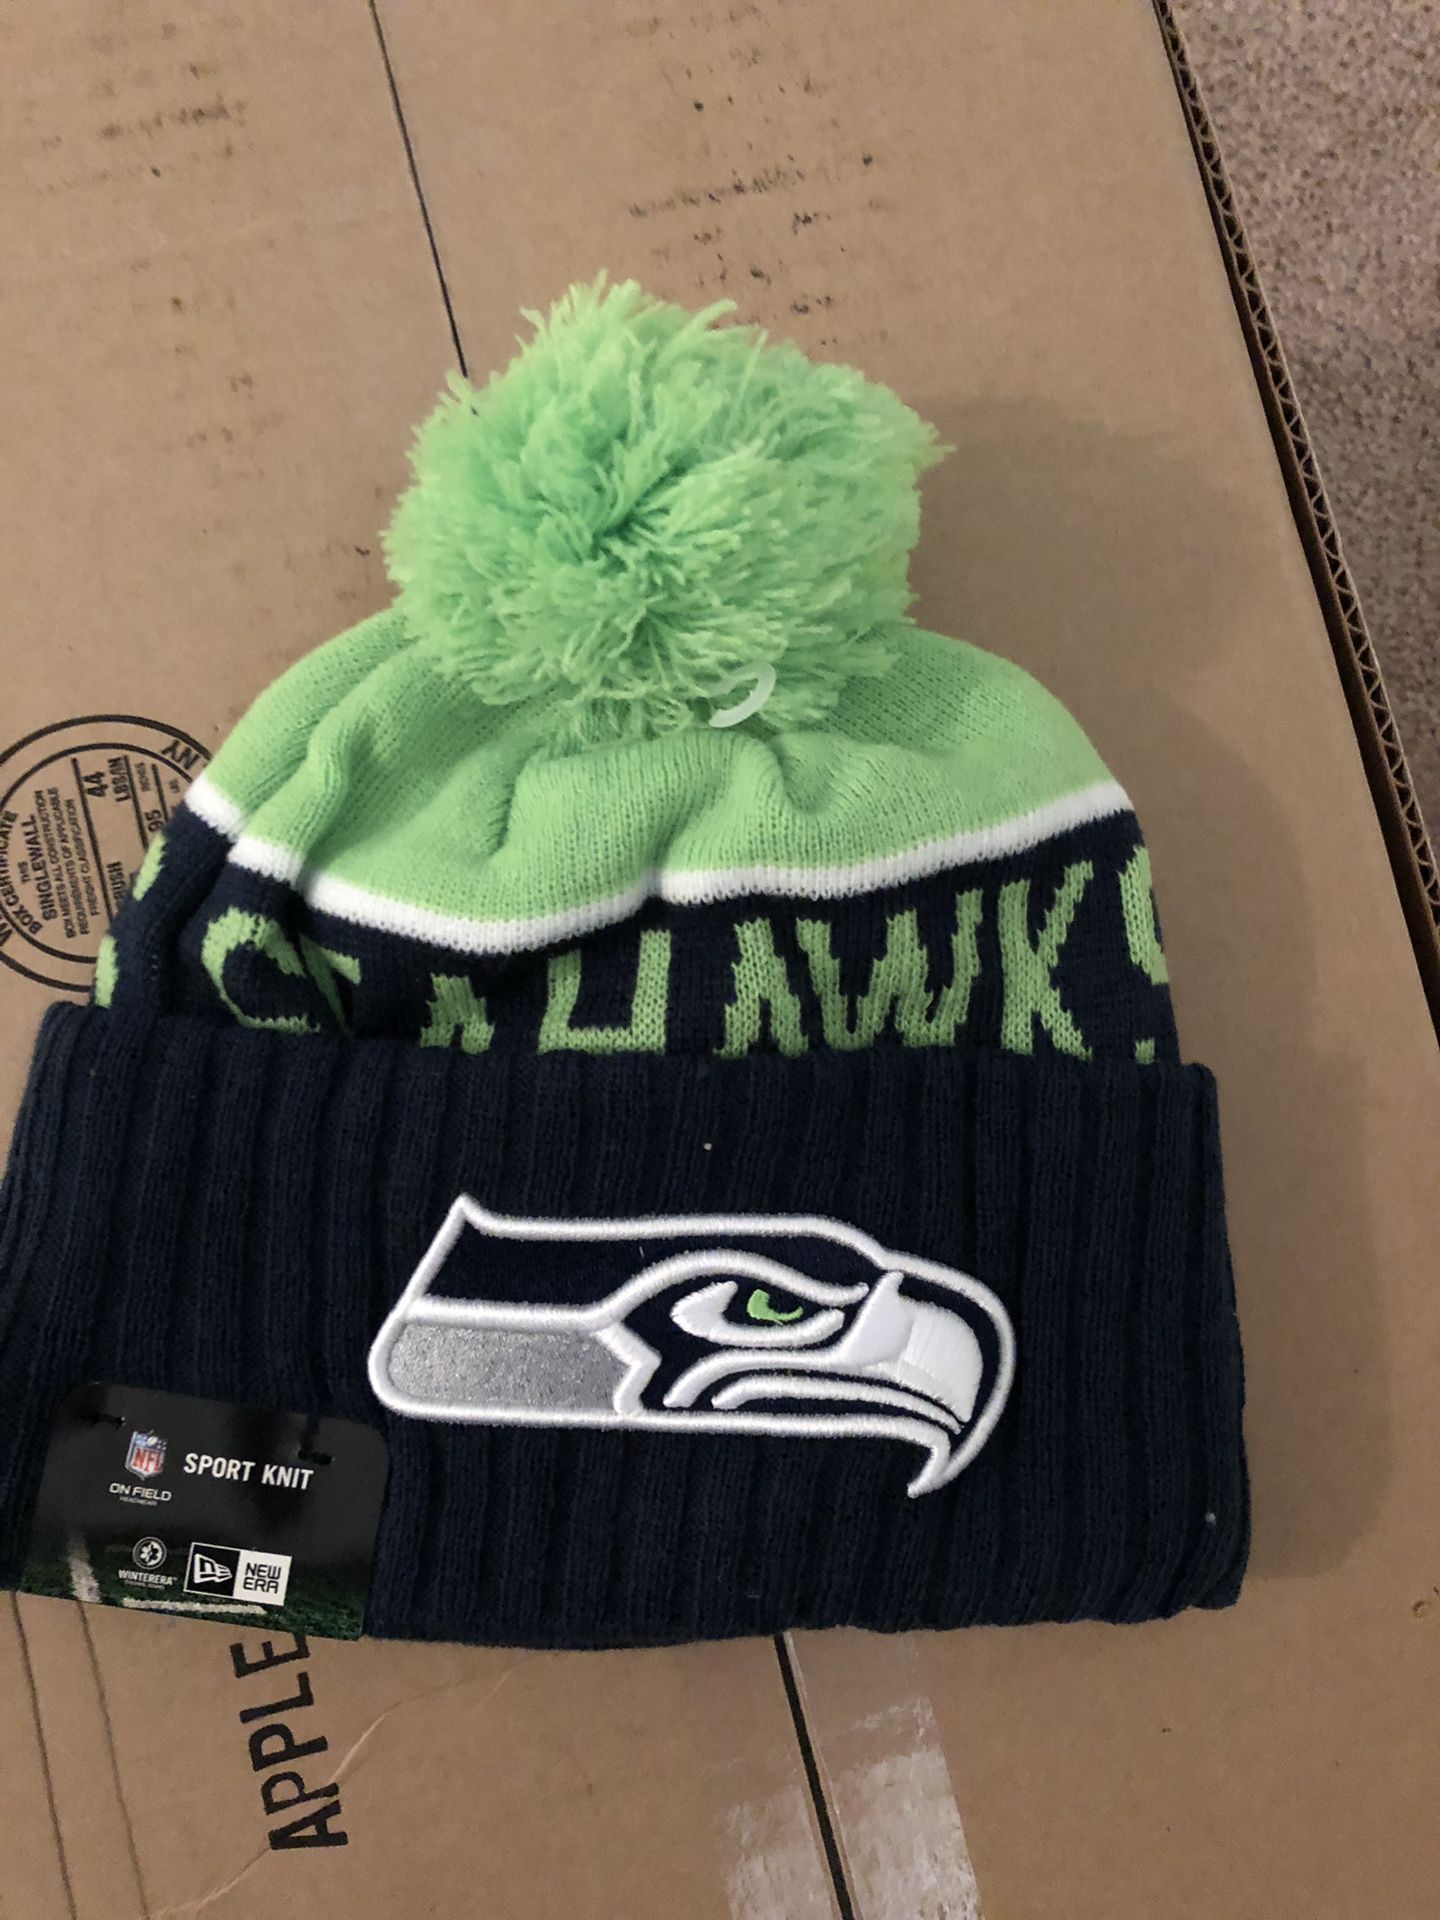 Brand new sport knit Seattle Seahawks